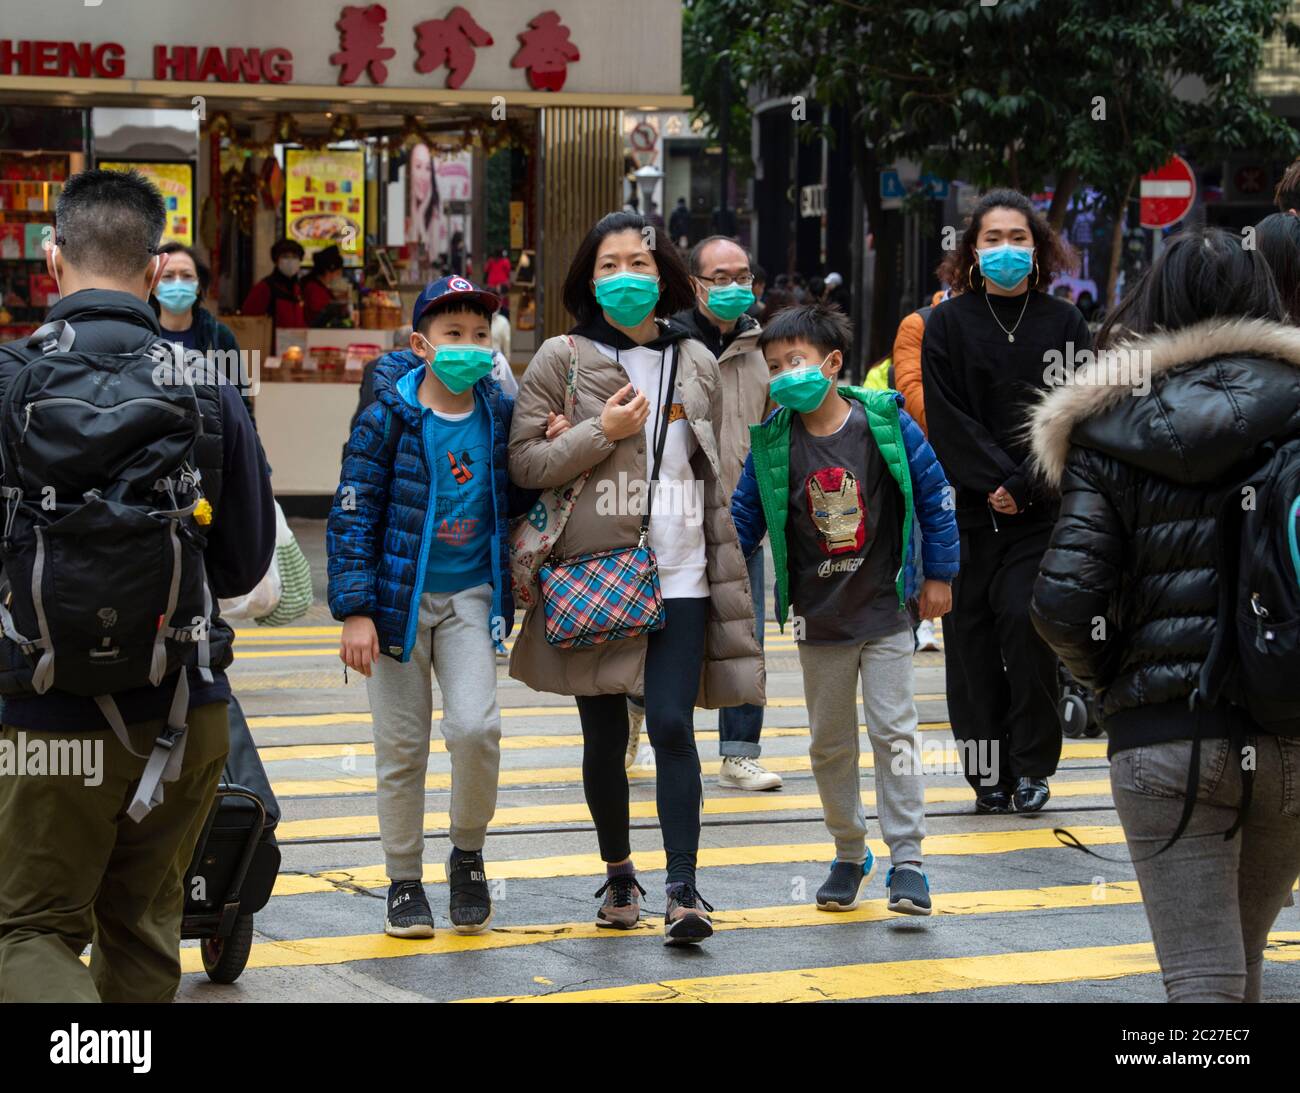 HONGKONG, HONGKONG SAR, CHINA: 29. JANUAR 2020. Die Angst vor dem 2019 erschienenen Roman Coronavirus ( Covid-19 ) aus Wuhan China zeigt sich auf den Straßen von Hong K Stockfoto